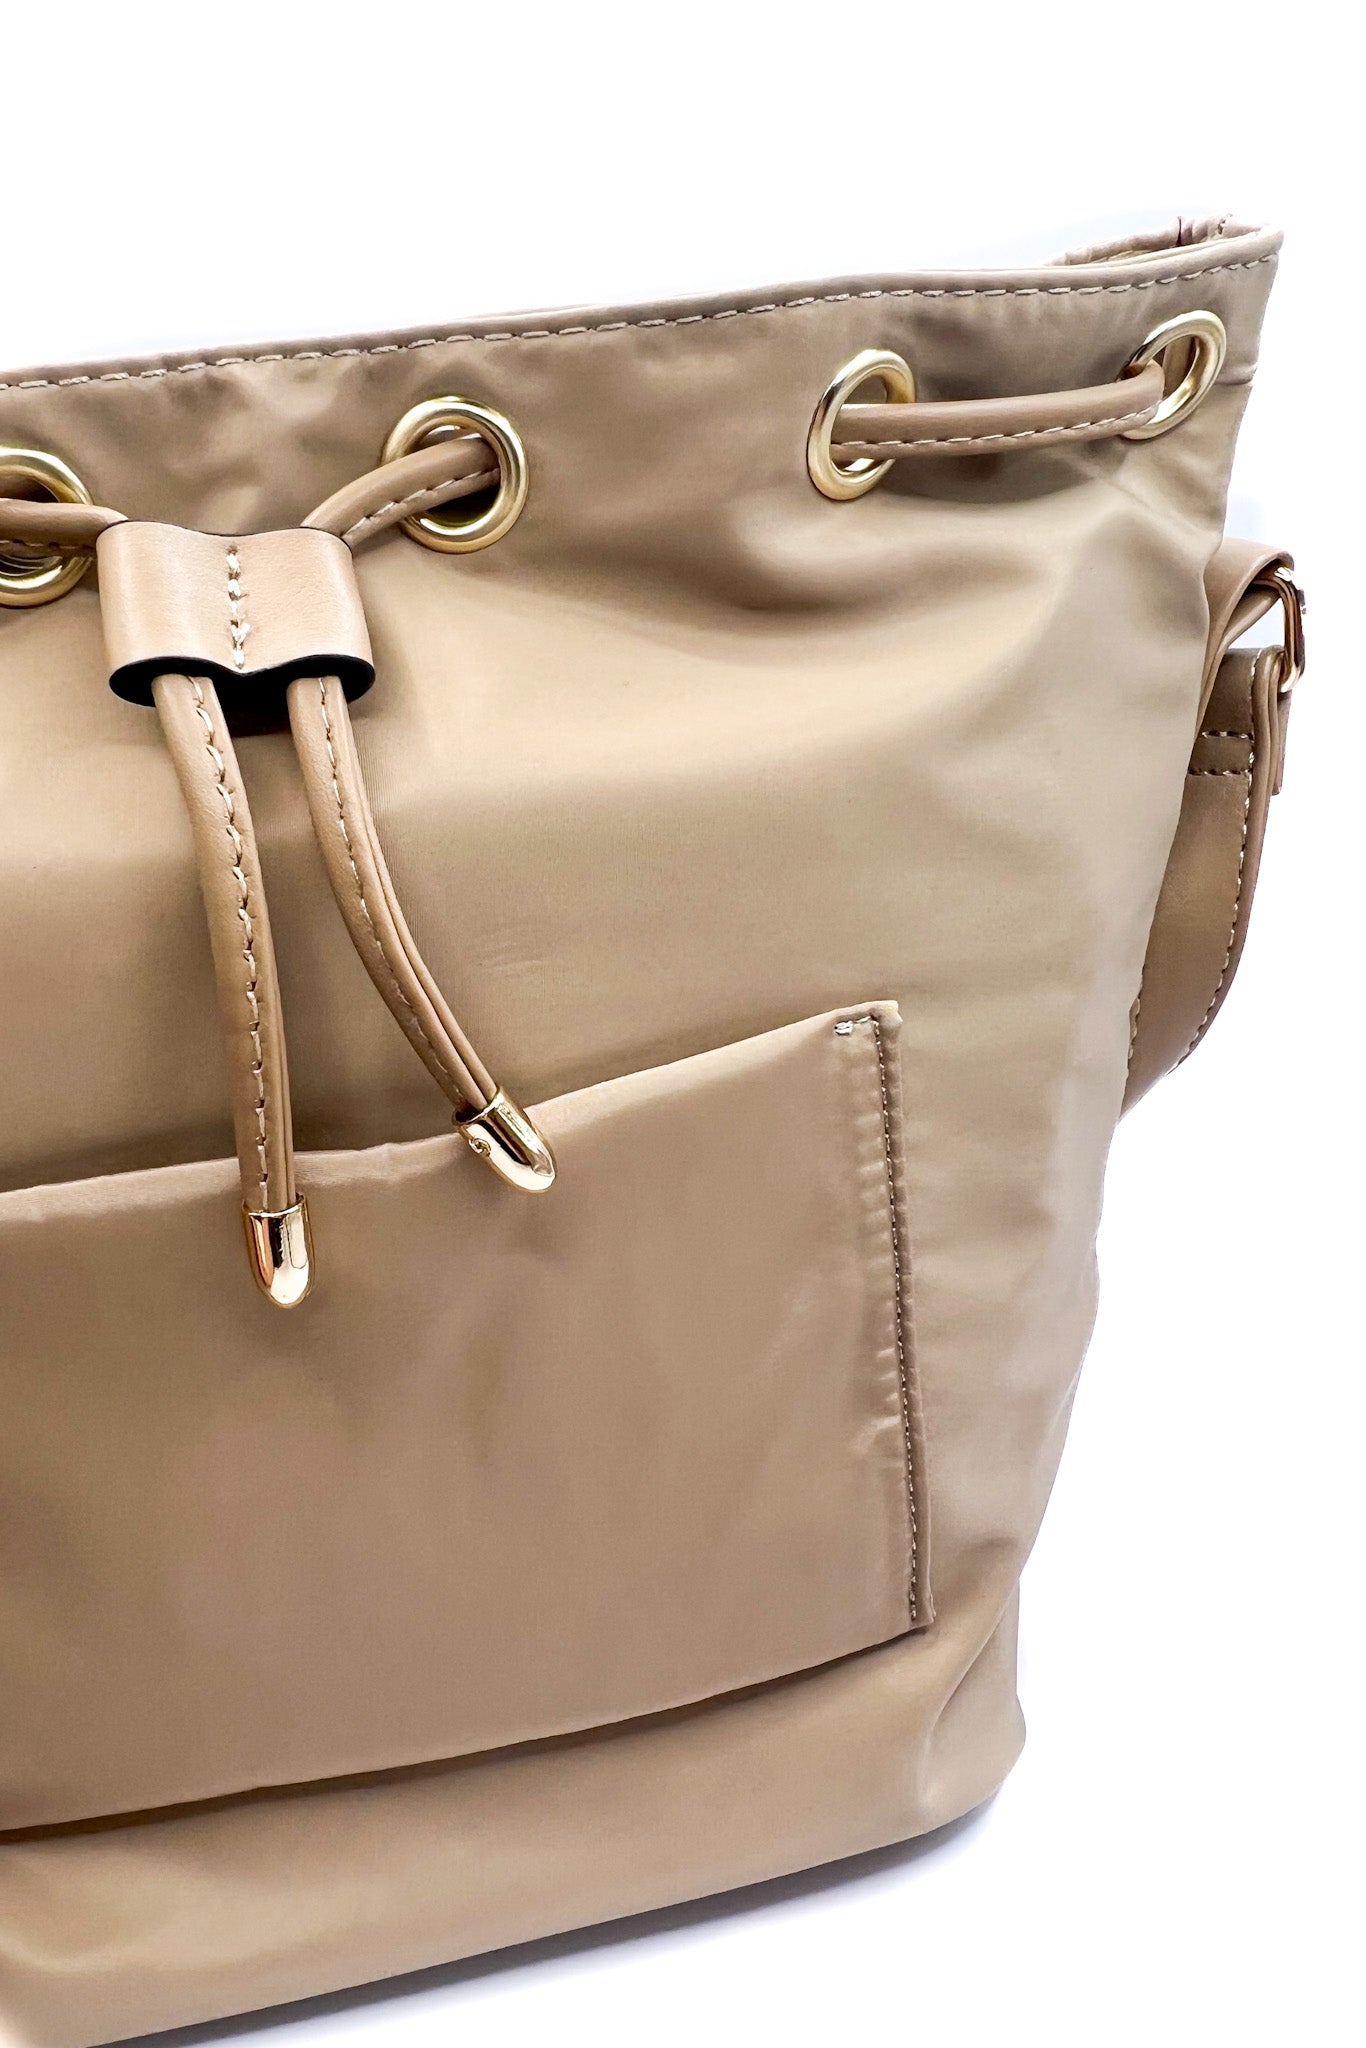 Sleek Drawstring Handbag